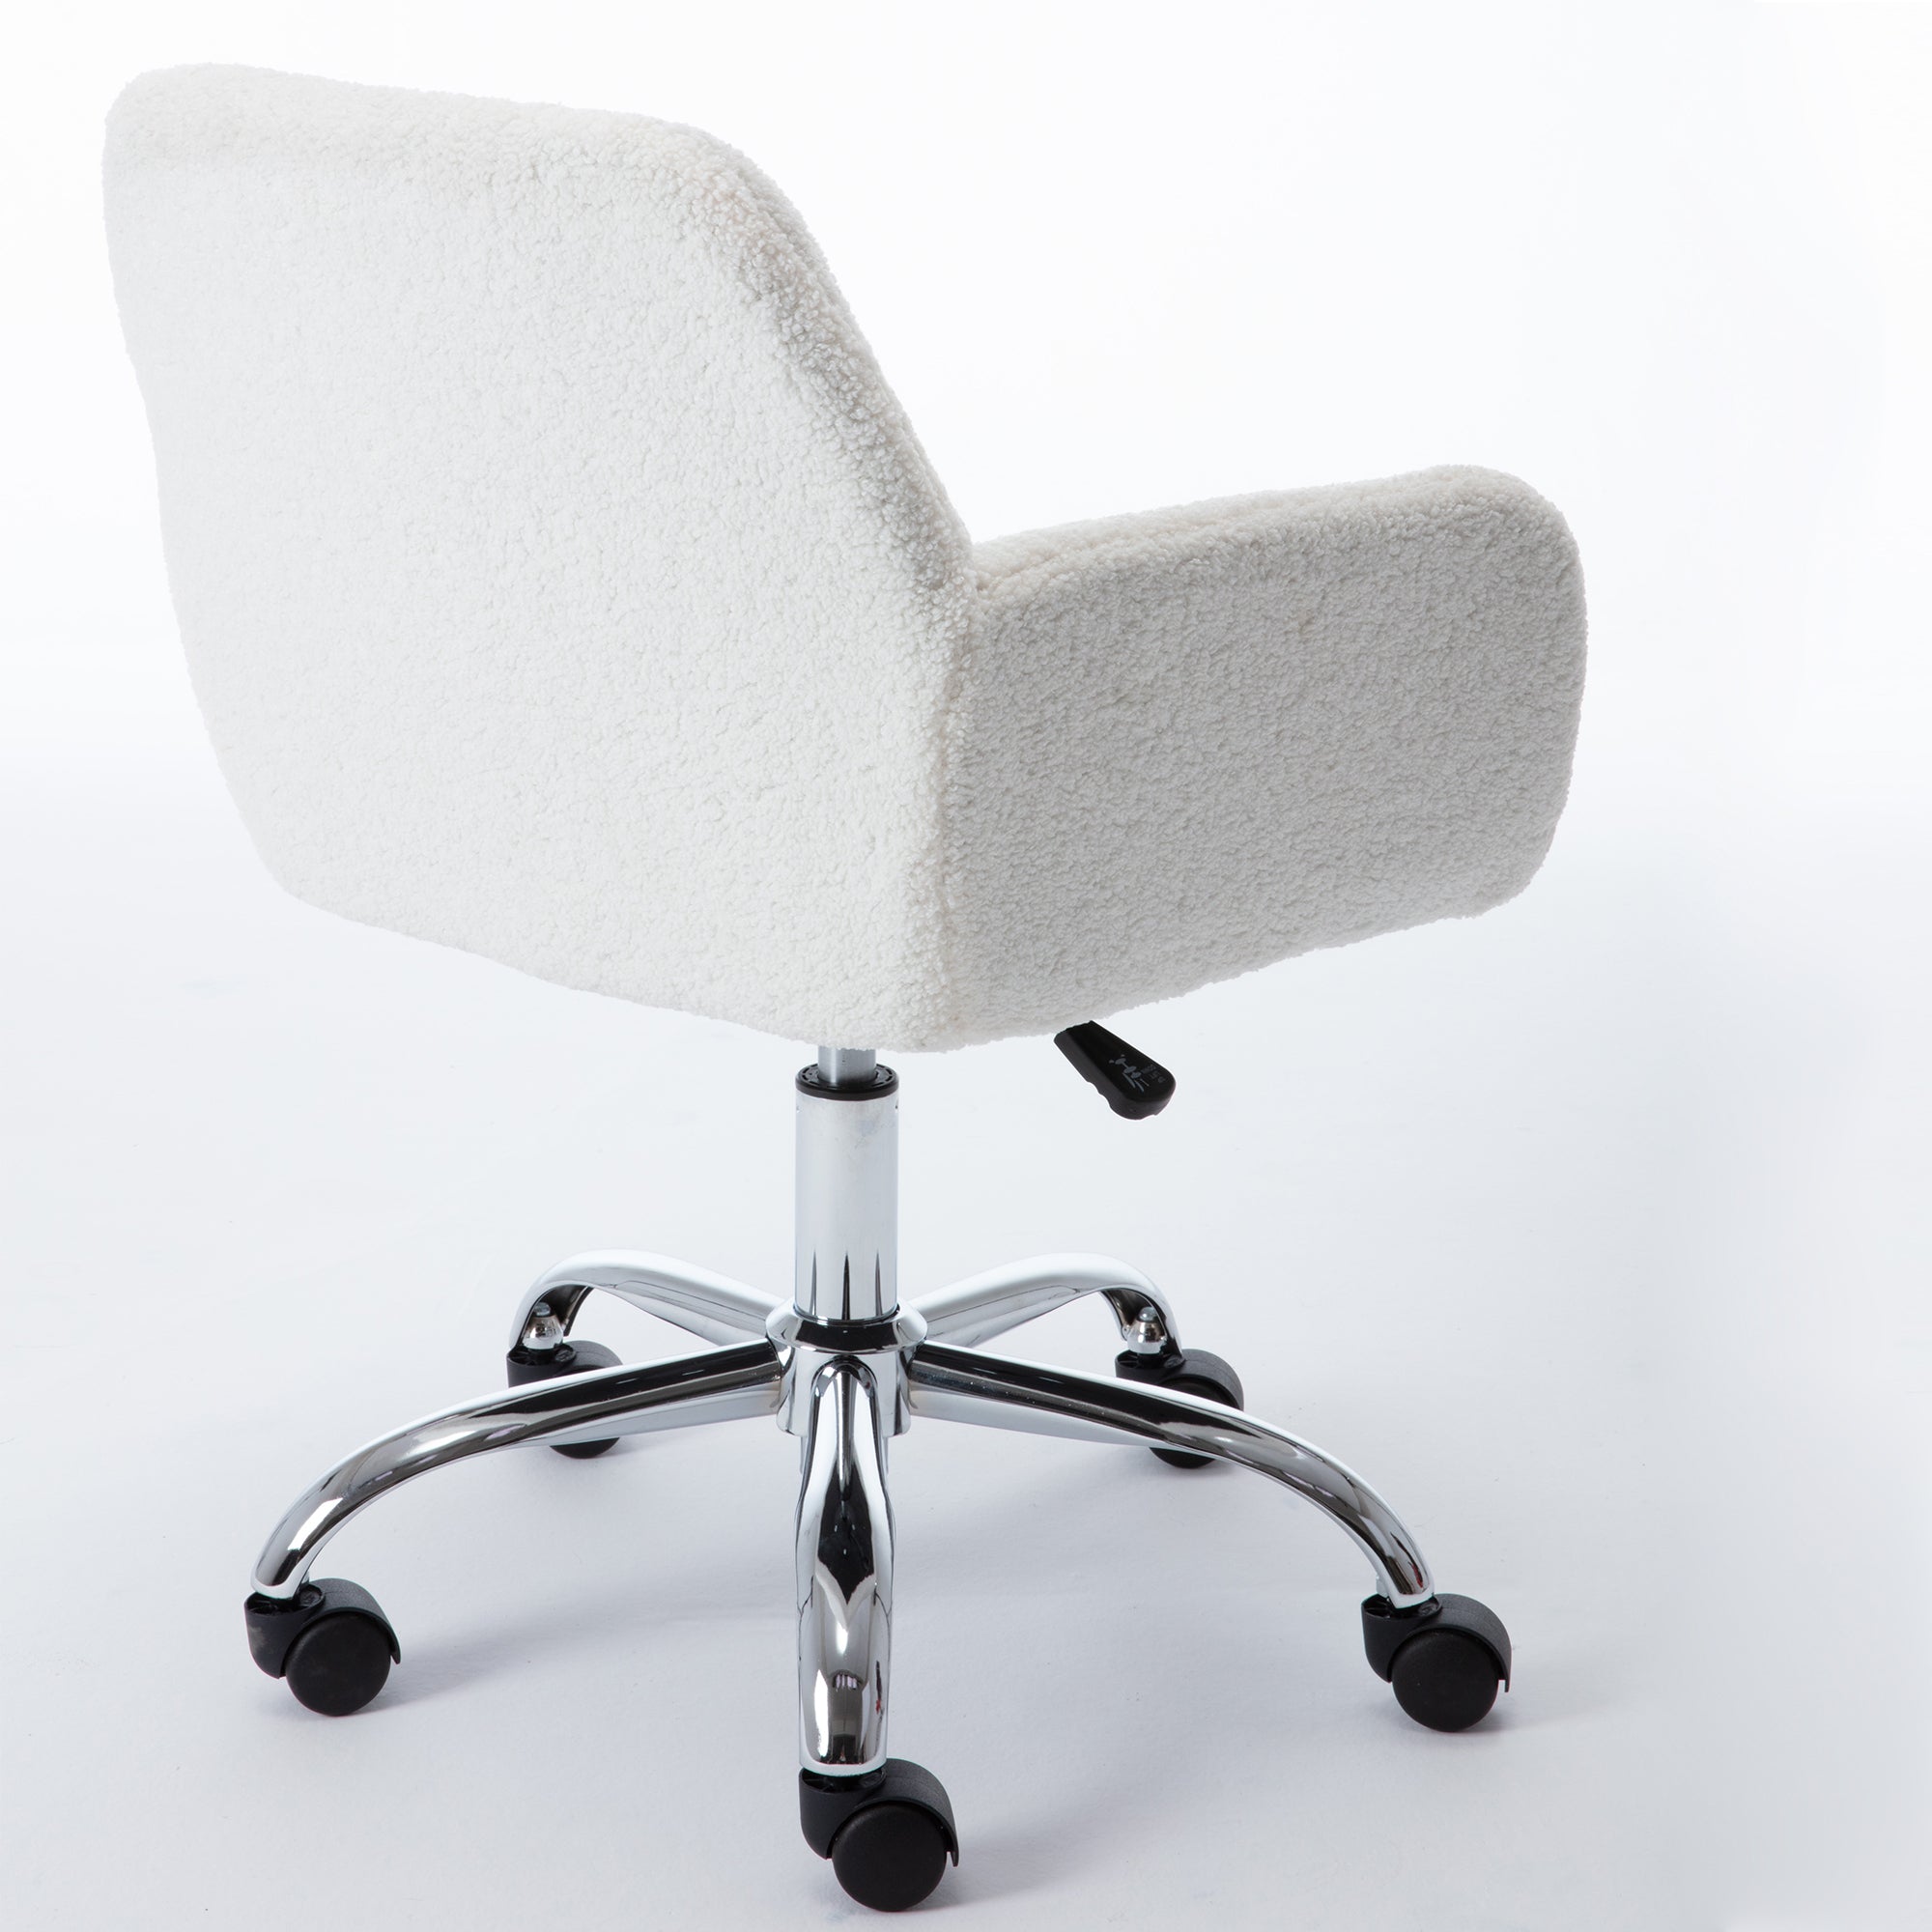 White Wool Chair